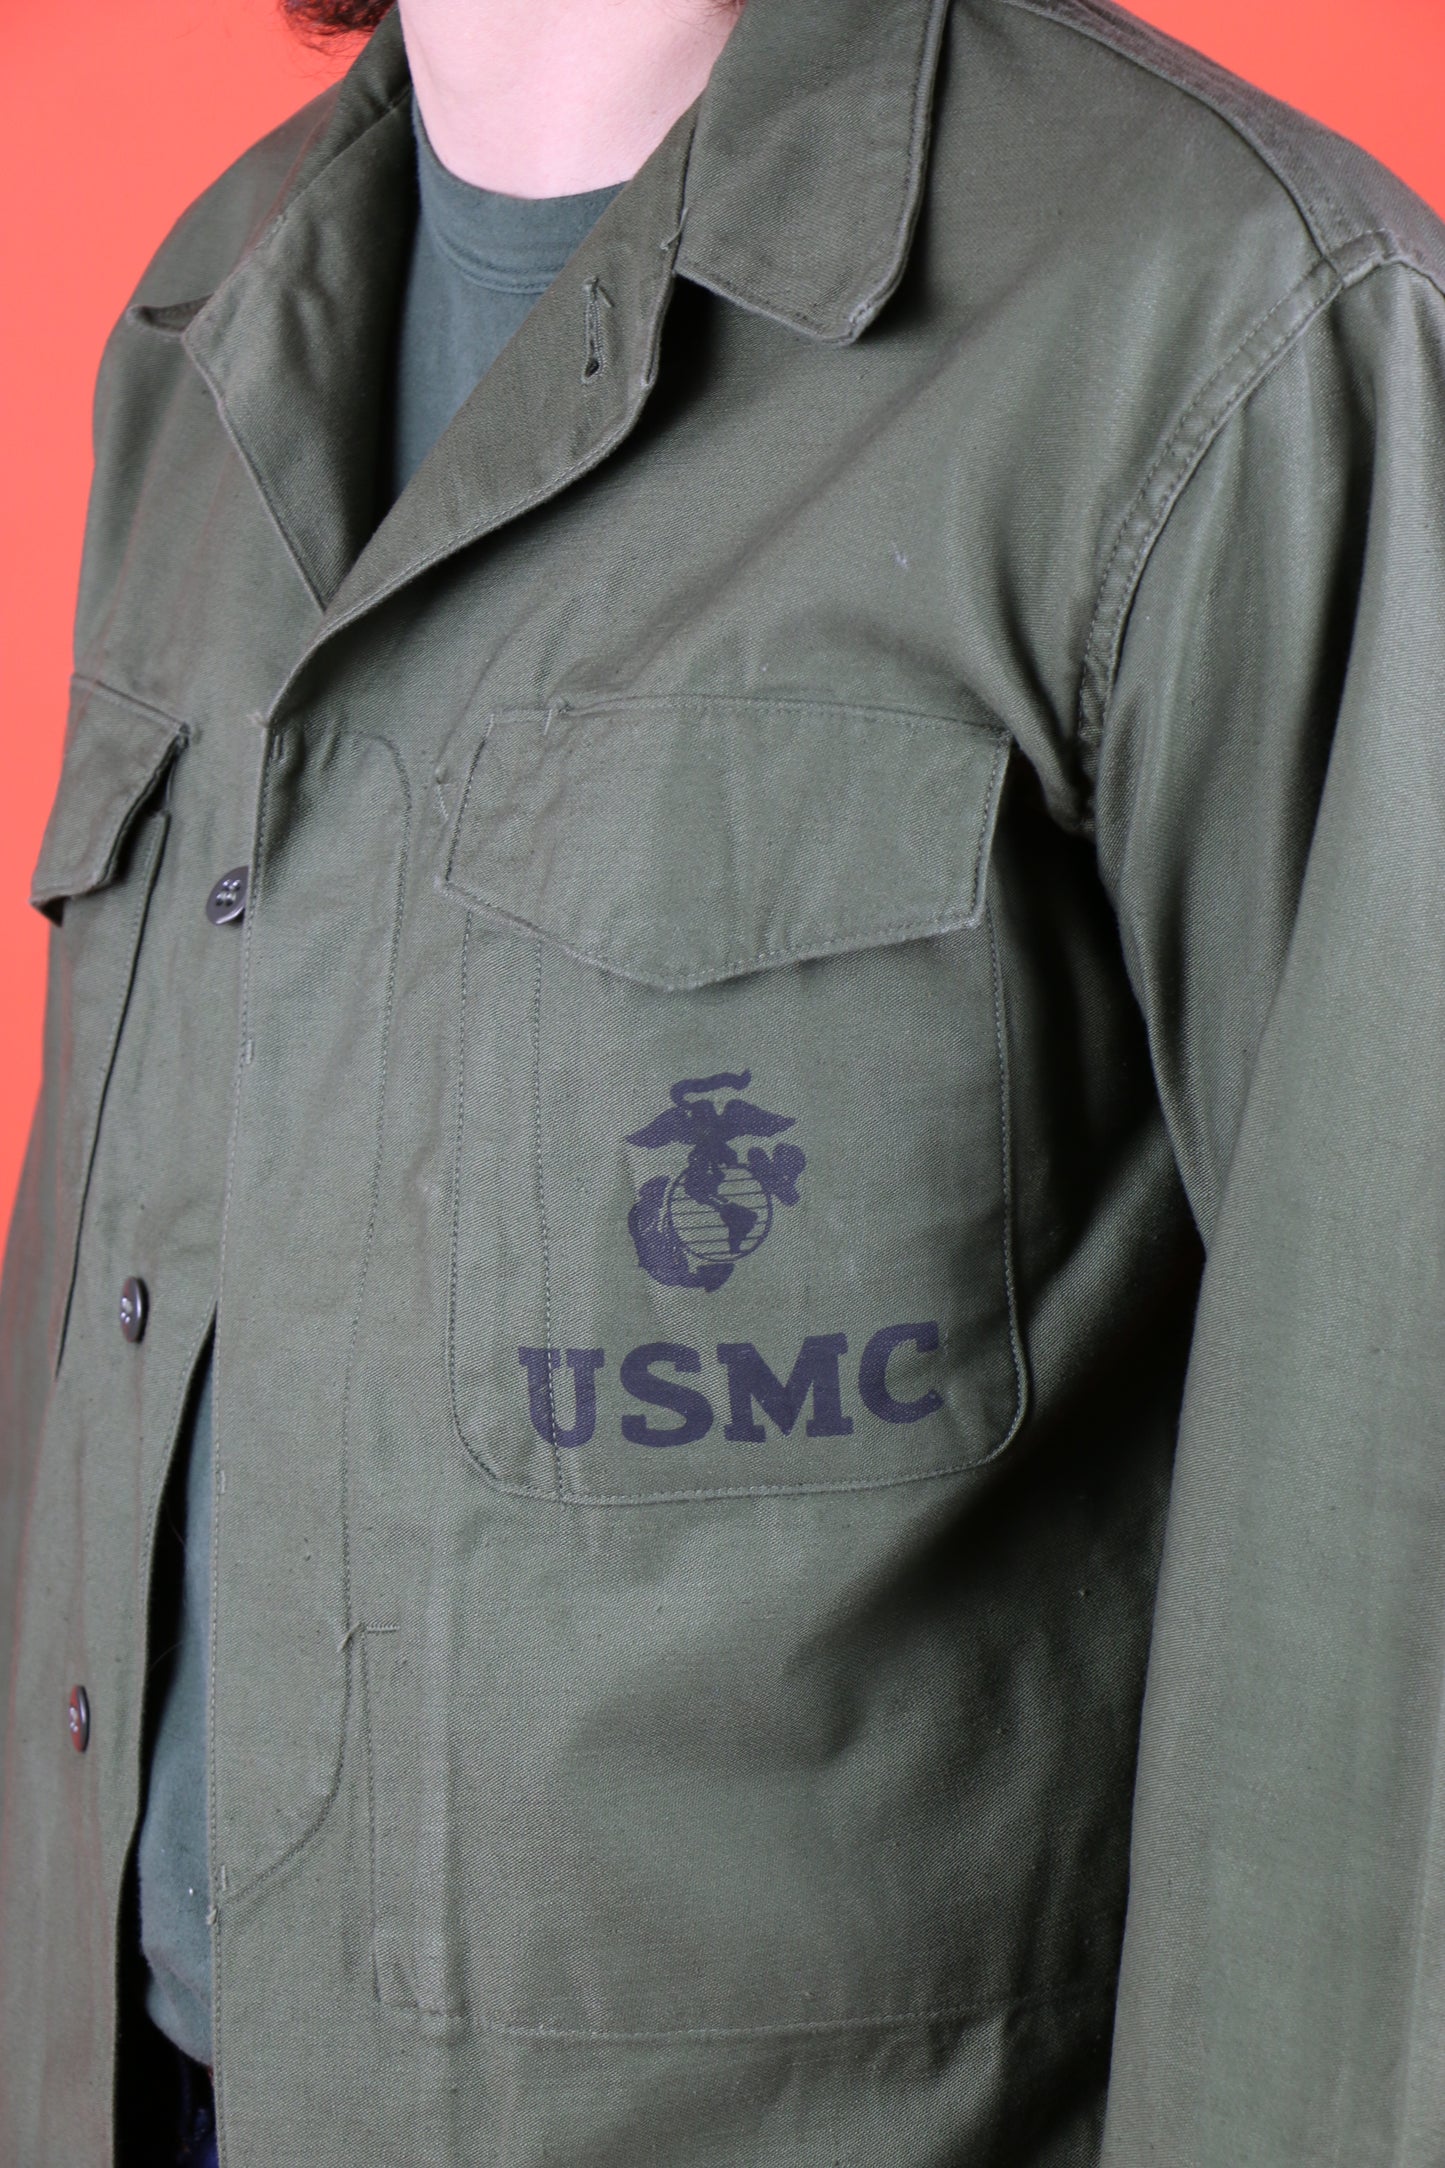 USMC P-57 Utility Uniform Jacket - vintage clothing clochard92.com